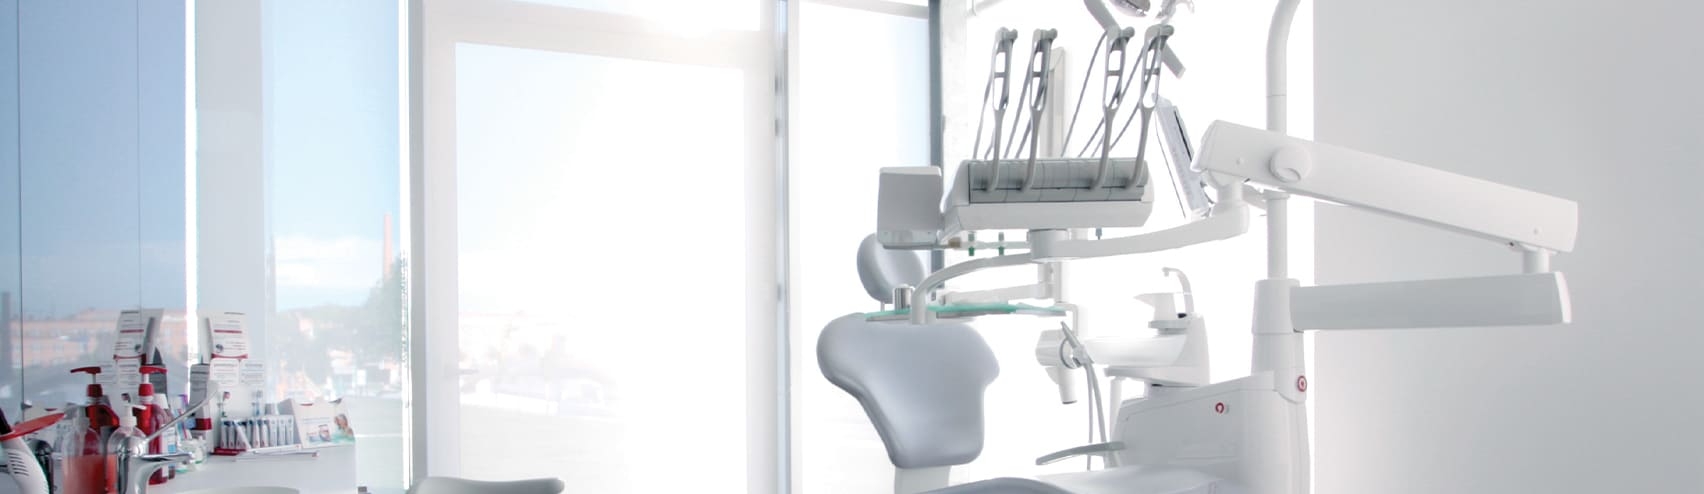 - Serviço cirurgia oral – clínica dentária - Espaço de Consulta Dentária